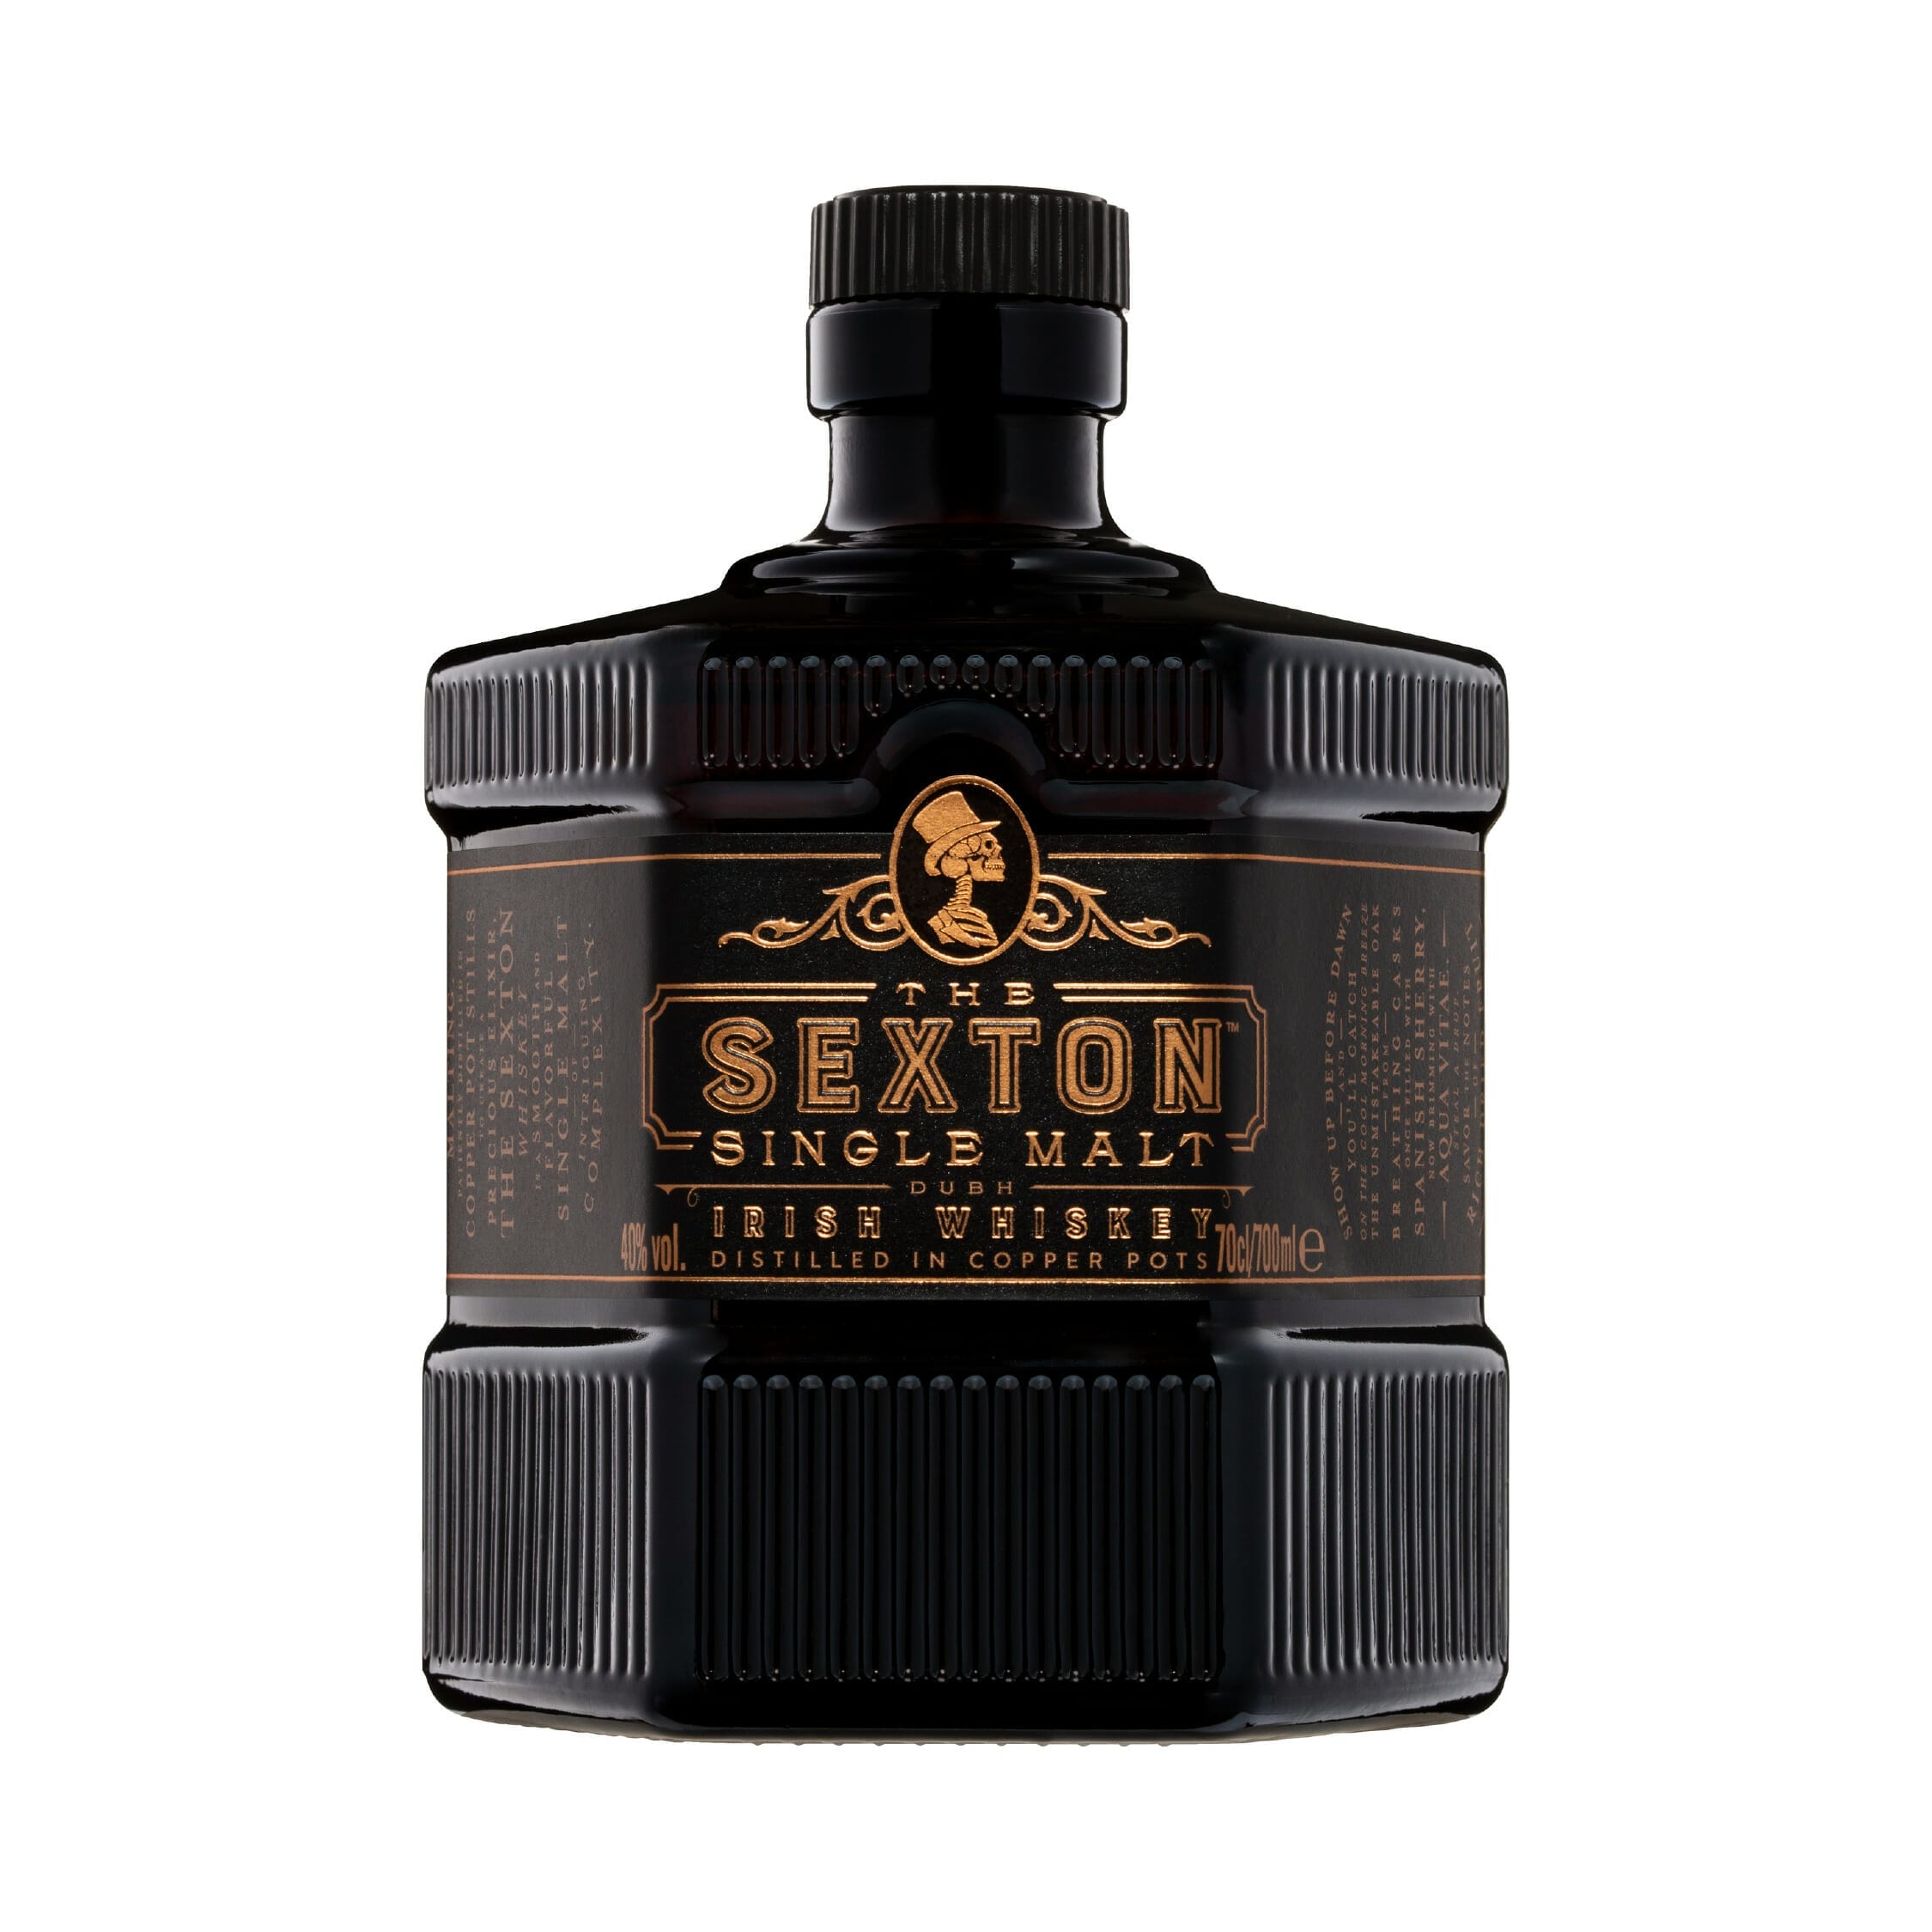 The Sexton Irish Whisky 700ml 01